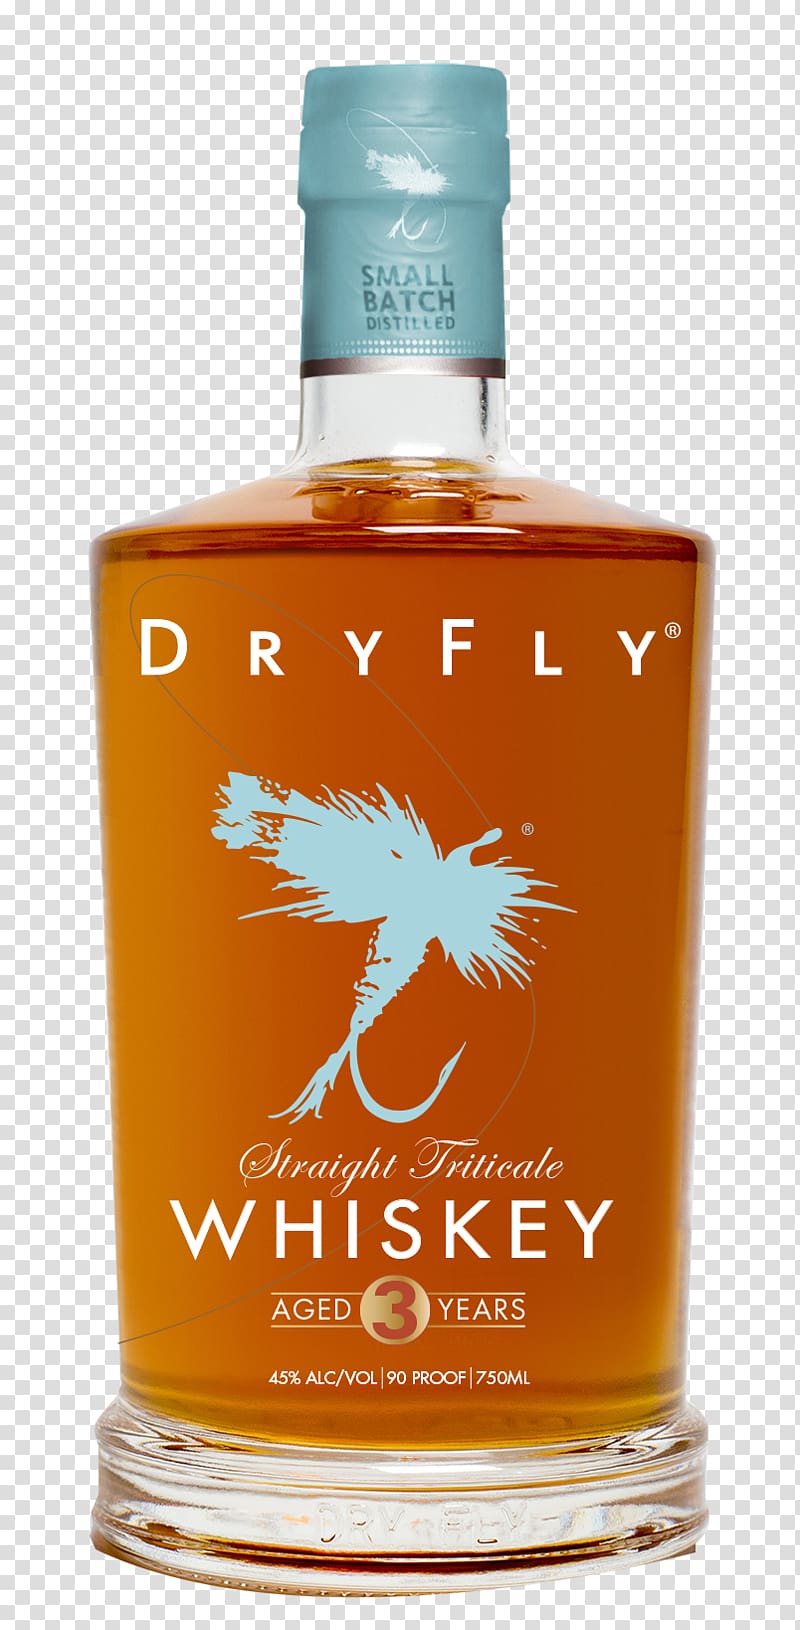 Bourbon whiskey Grain whisky Distilled beverage Vodka, vodka transparent background PNG clipart